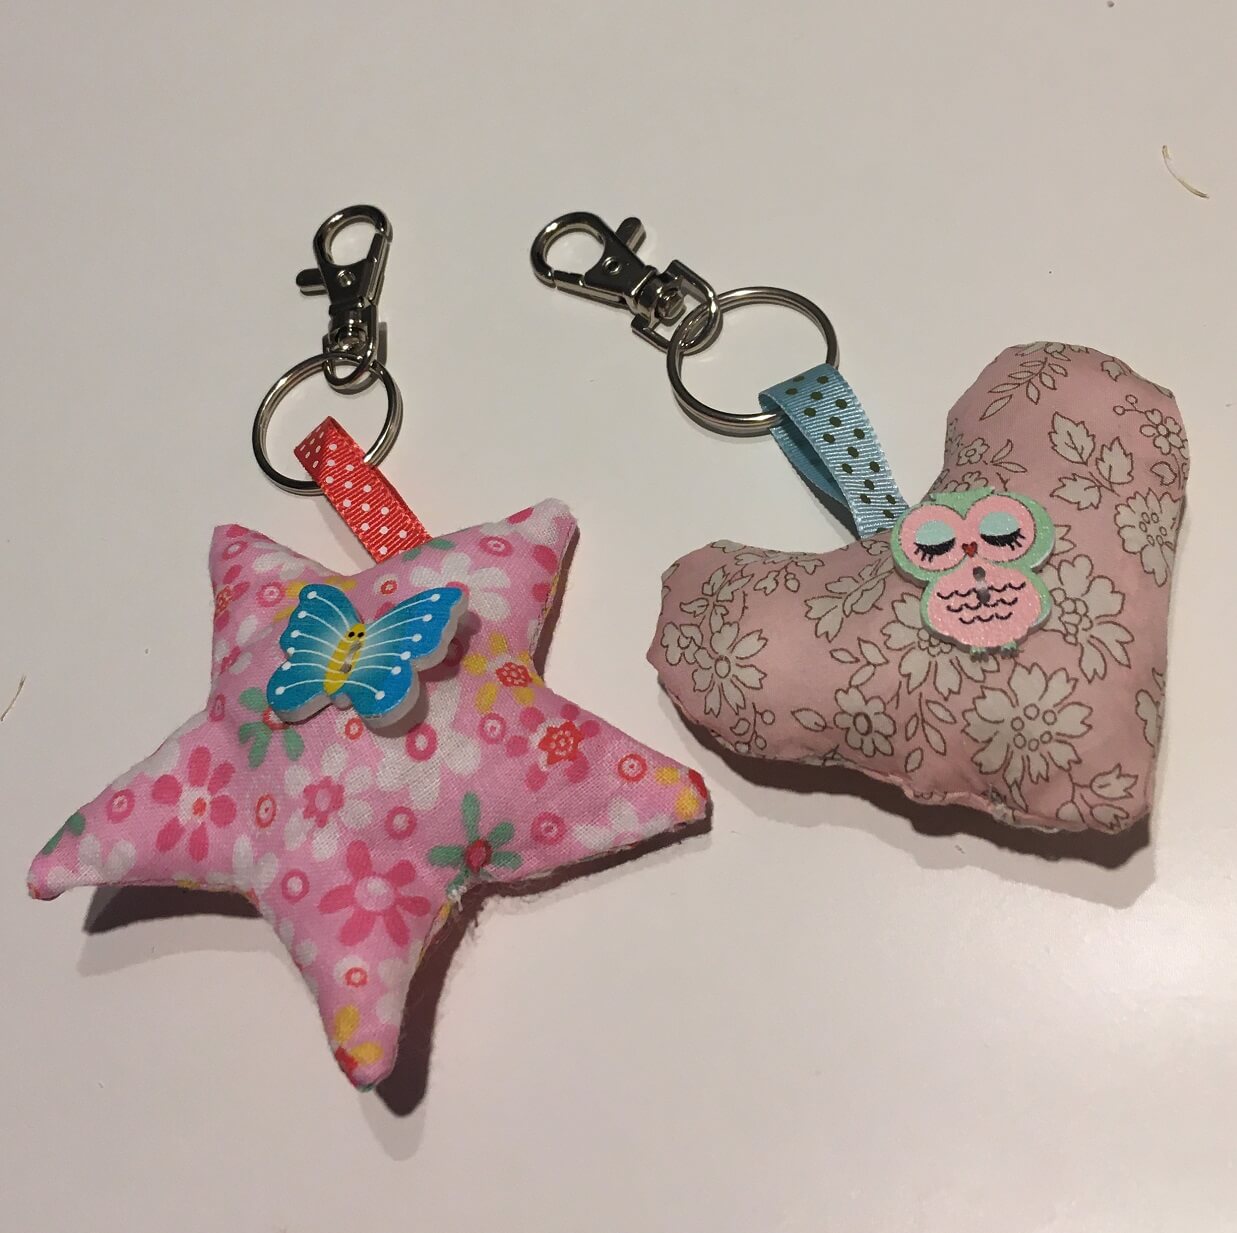 Porte-clés en tissu liberty et rubans ornés de boutons décoratifs réalisés pour la fête des mère par deux élèves débutantes en couture lors d'un atelier à thème